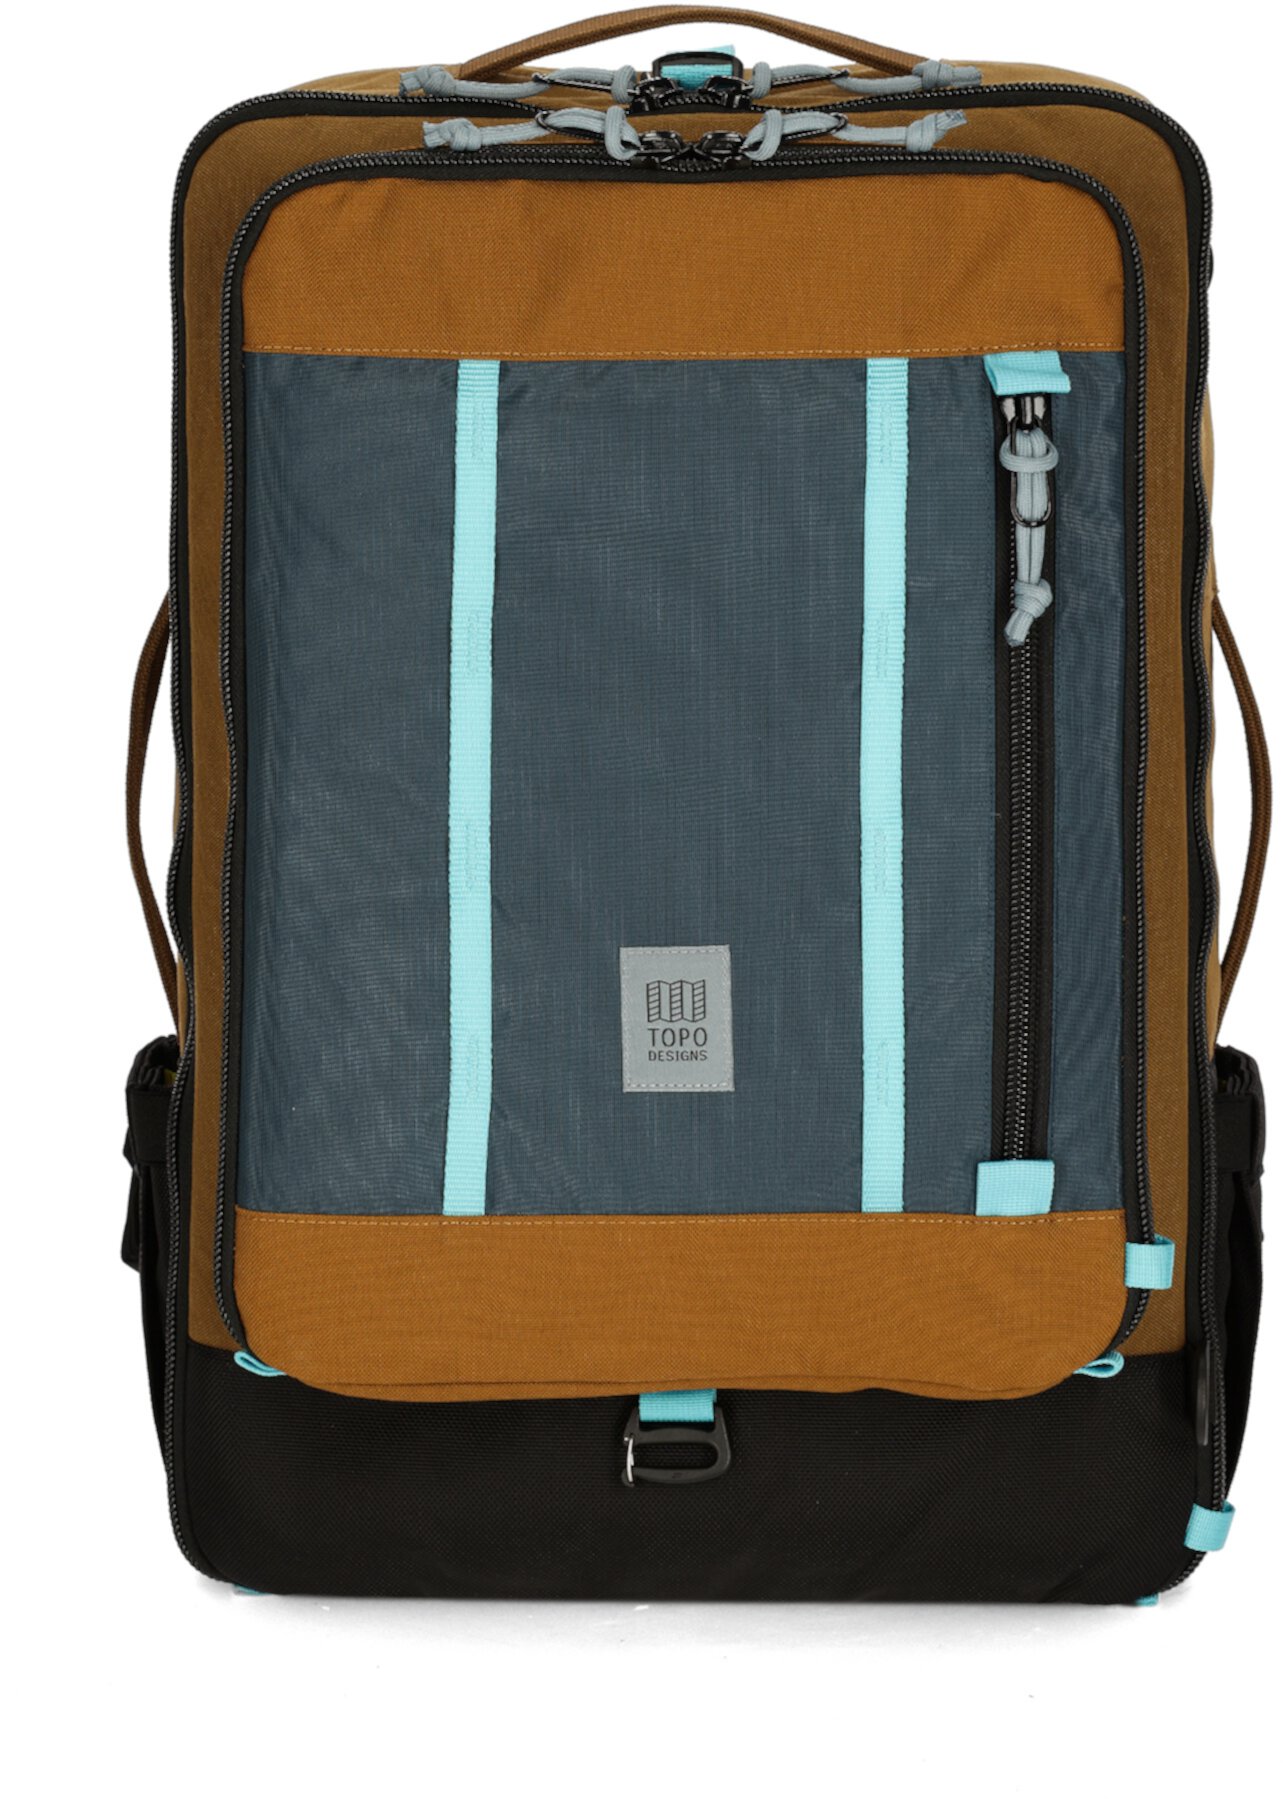 40-литровая дорожная сумка Global Topo Designs